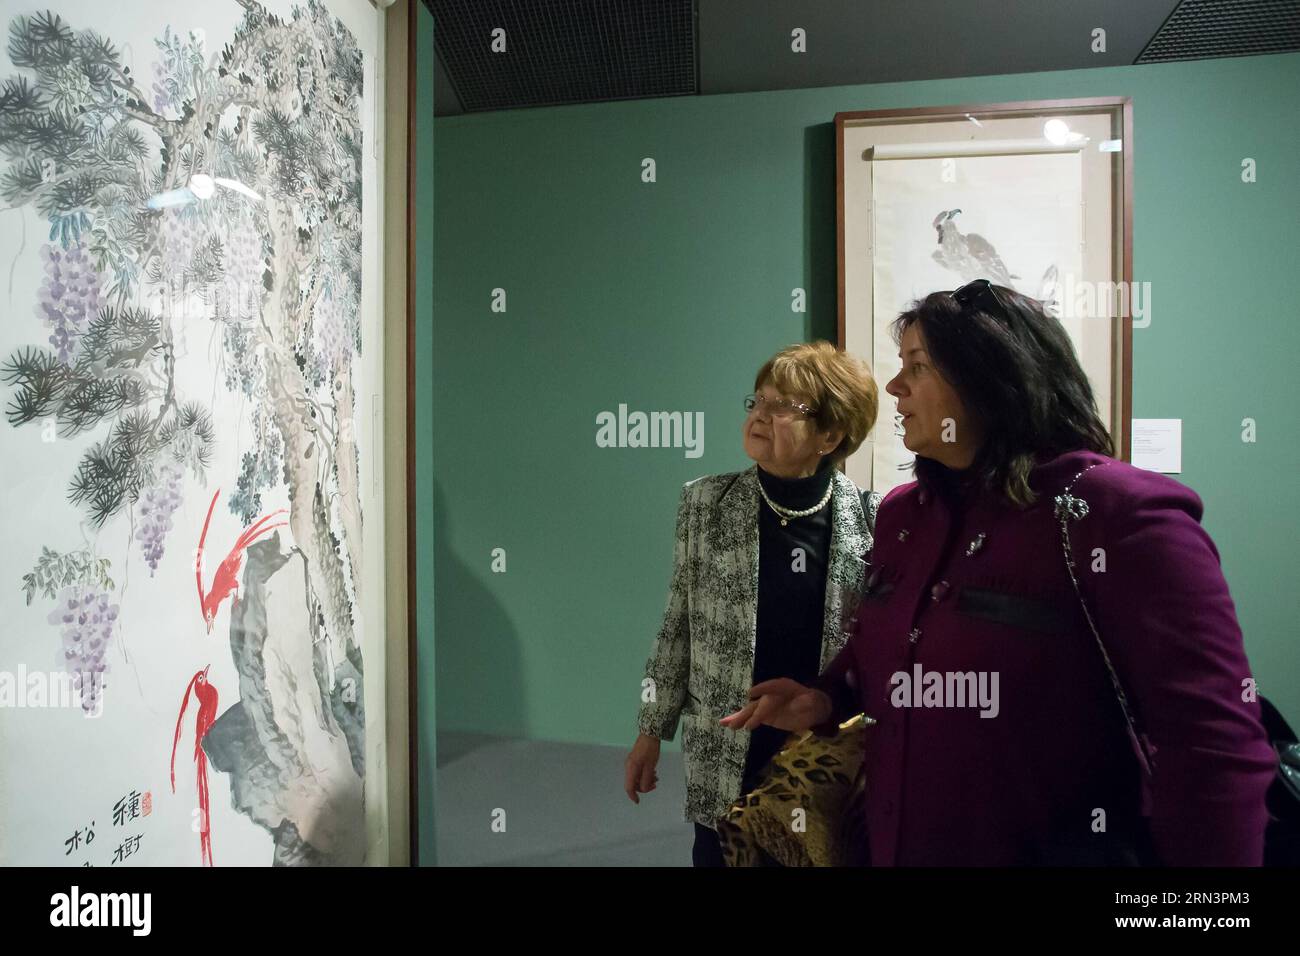 BUDAPEST, le 23 avril 2015 -- les visiteurs voient des peintures à l'exposition de l'artiste chinois Qi Baishi à la Galerie nationale hongroise à Budapest, Hongrie, le 23 avril 2015. Une exposition des œuvres de Qi Baishi, l un des peintres chinois les plus remarquables du 20e siècle, a été inaugurée jeudi à la Galerie nationale hongroise de Budapest. )(zhf) HUNGARY-BUDAPEST-CHINA-EXHIBITION-QI BAISHI AttilaxVolgyi PUBLICATIONxNOTxINxCHN Budapest avril 23 2015 visiteurs Voir les peintures À l'exposition de l'artiste chinois Qi Baishi À la Galerie nationale hongroise à Budapest Hongrie DU 23 2015 avril à E Banque D'Images